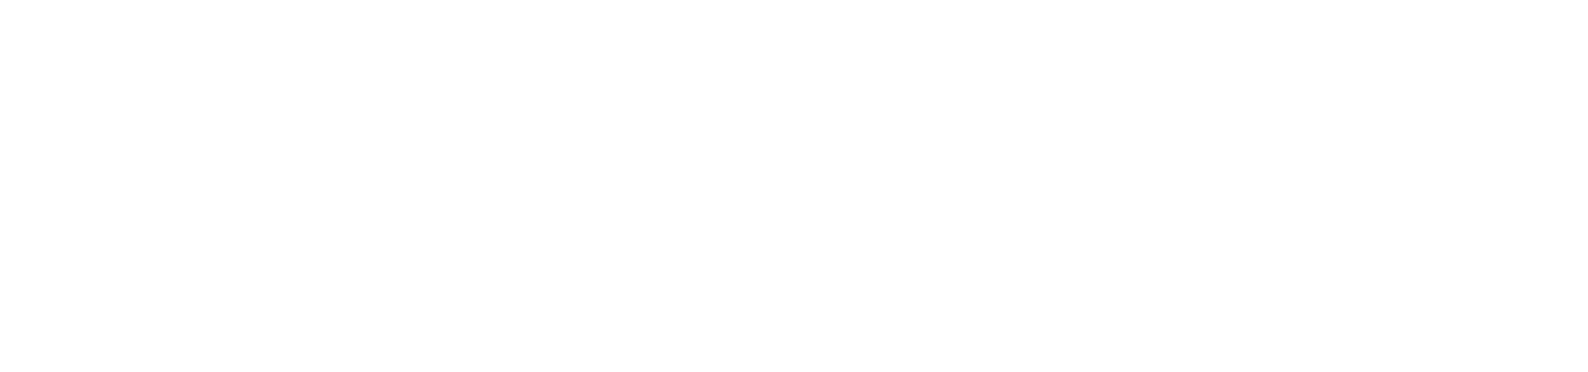 Alumina Limited logo large for dark backgrounds (transparent PNG)